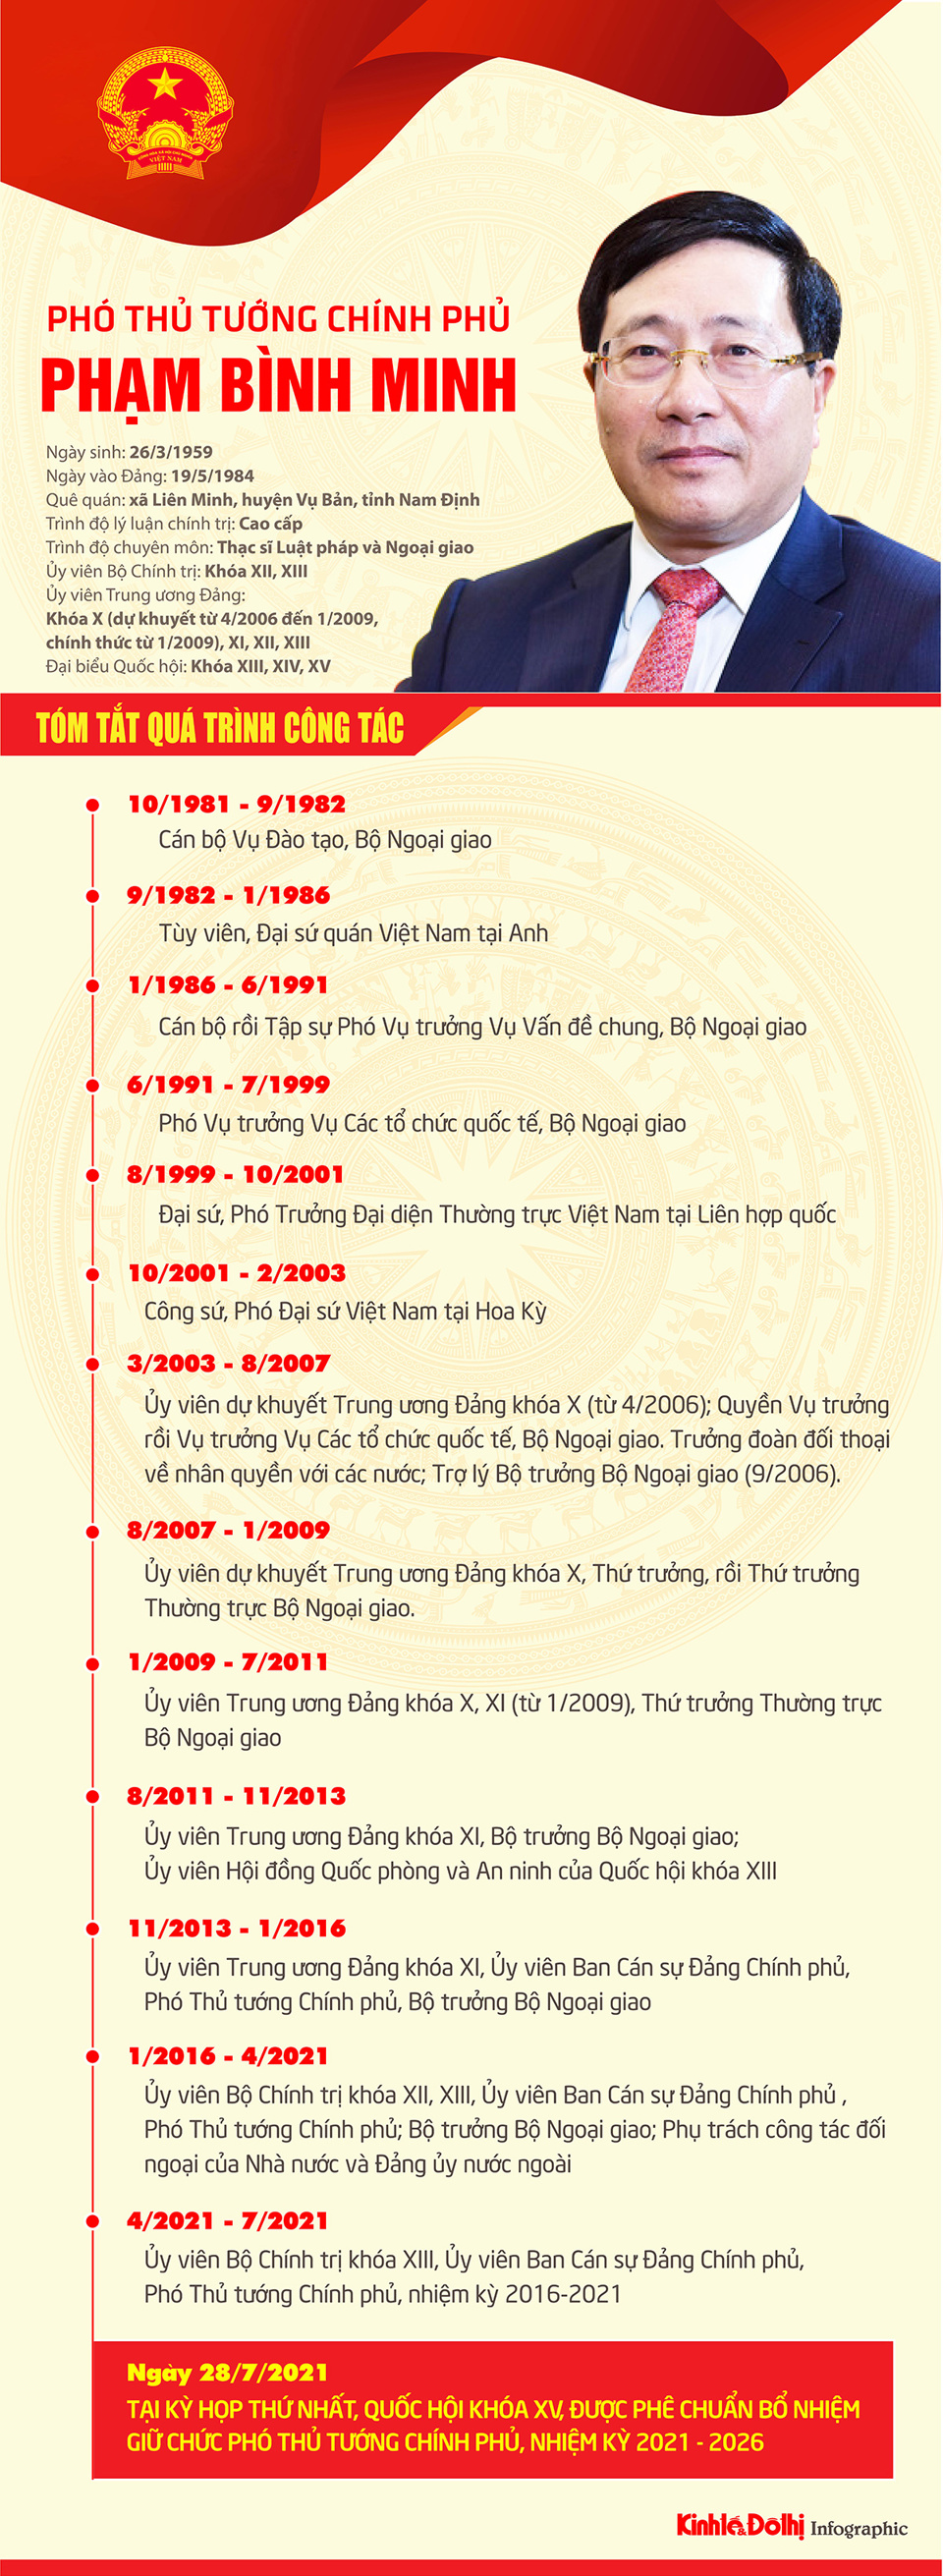 [Infographic] Tóm tắt quá trình công tác của Phó Thủ tướng Chính phủ Phạm Bình Minh - Ảnh 1